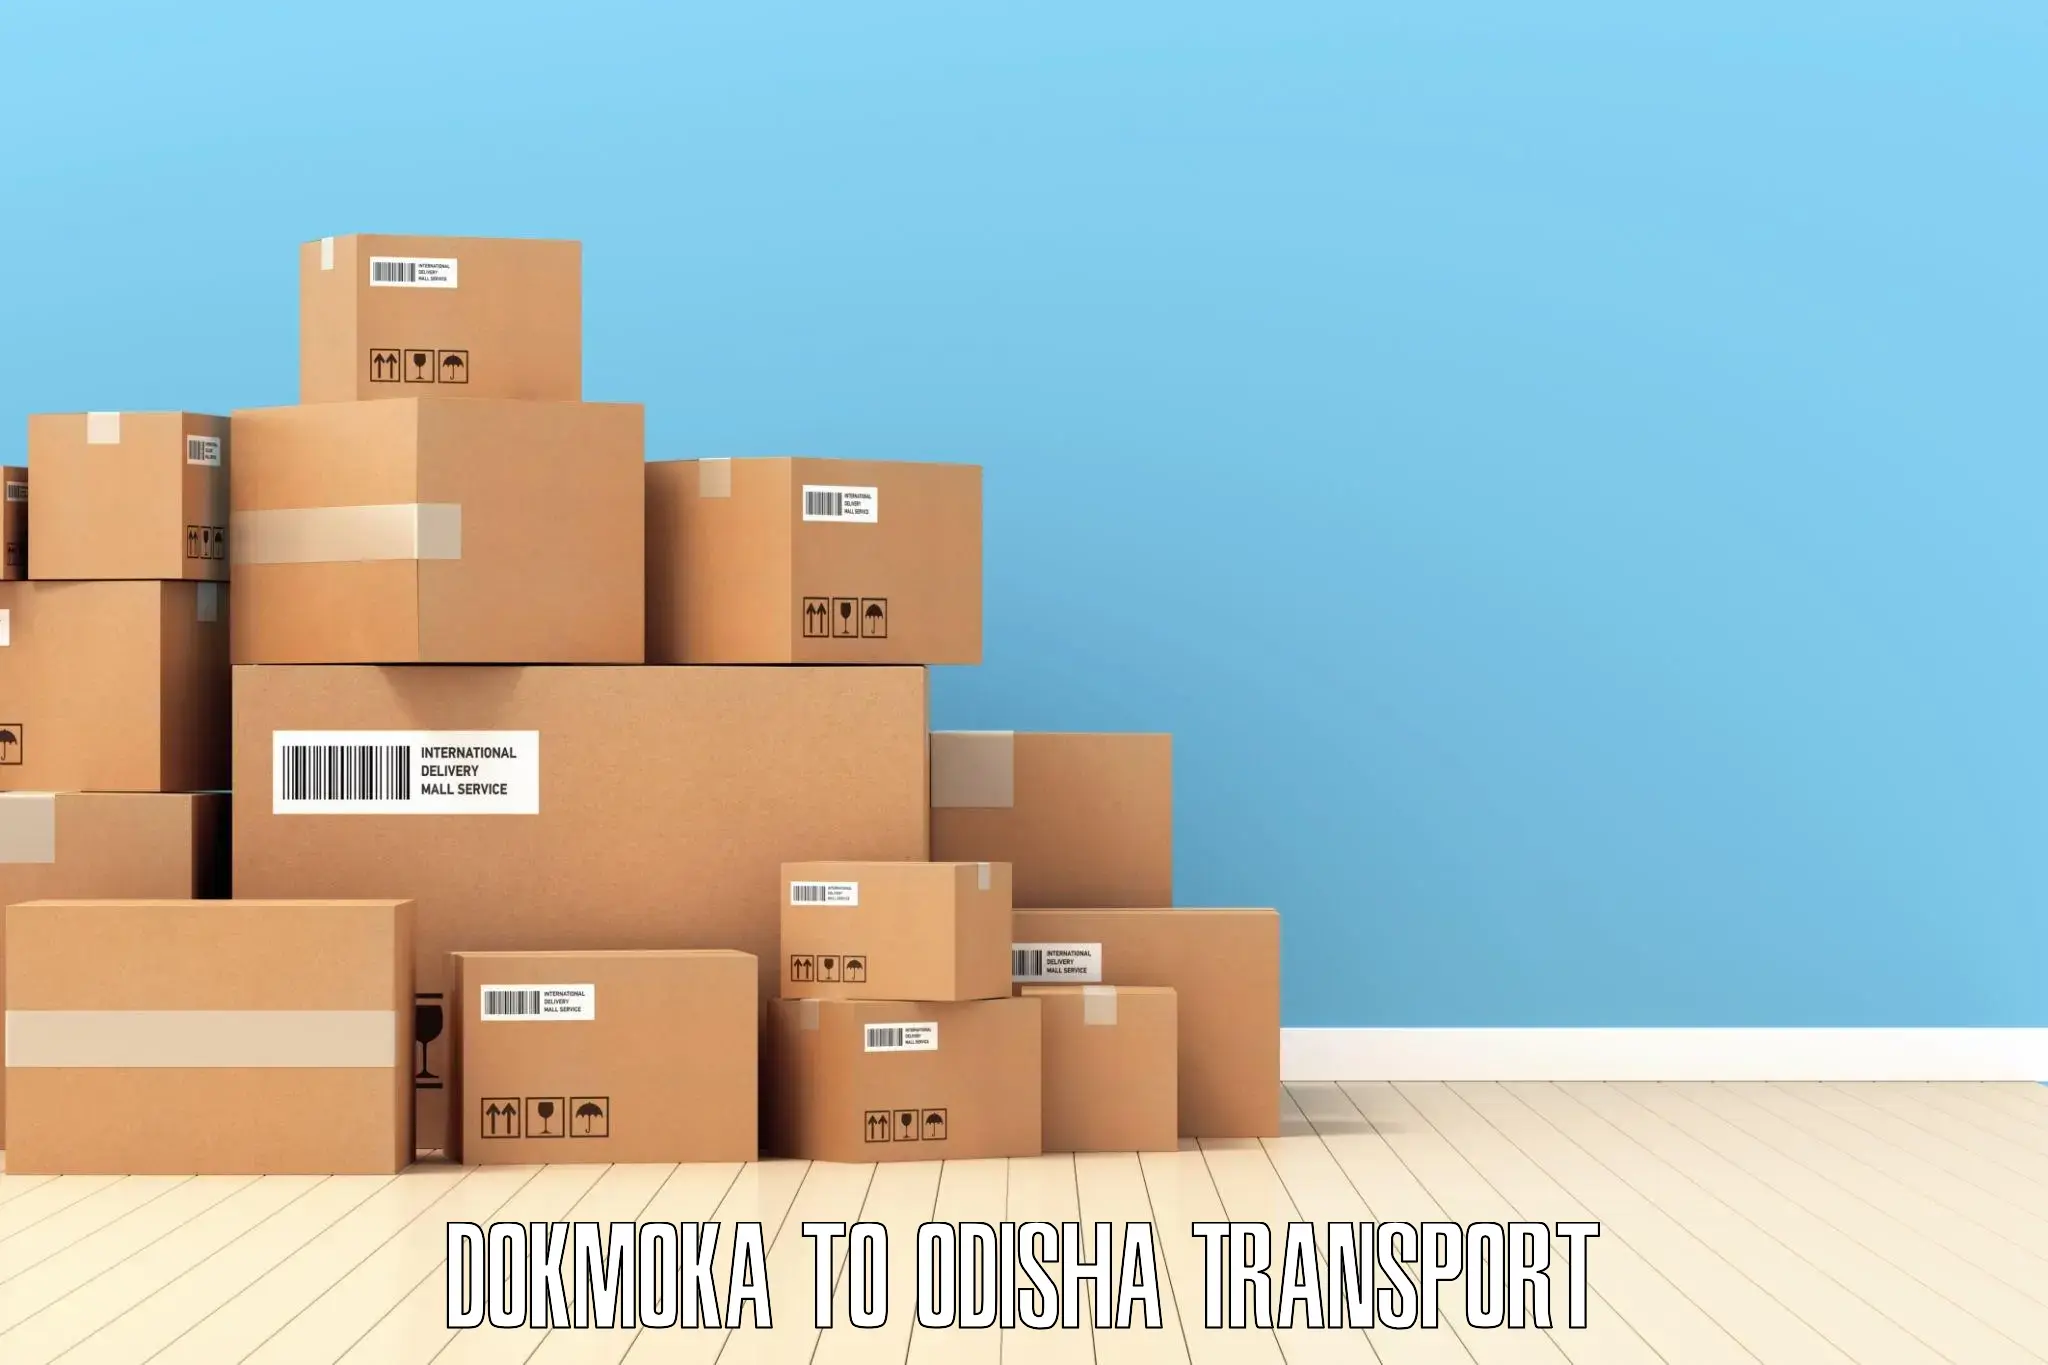 Vehicle parcel service Dokmoka to Bamra